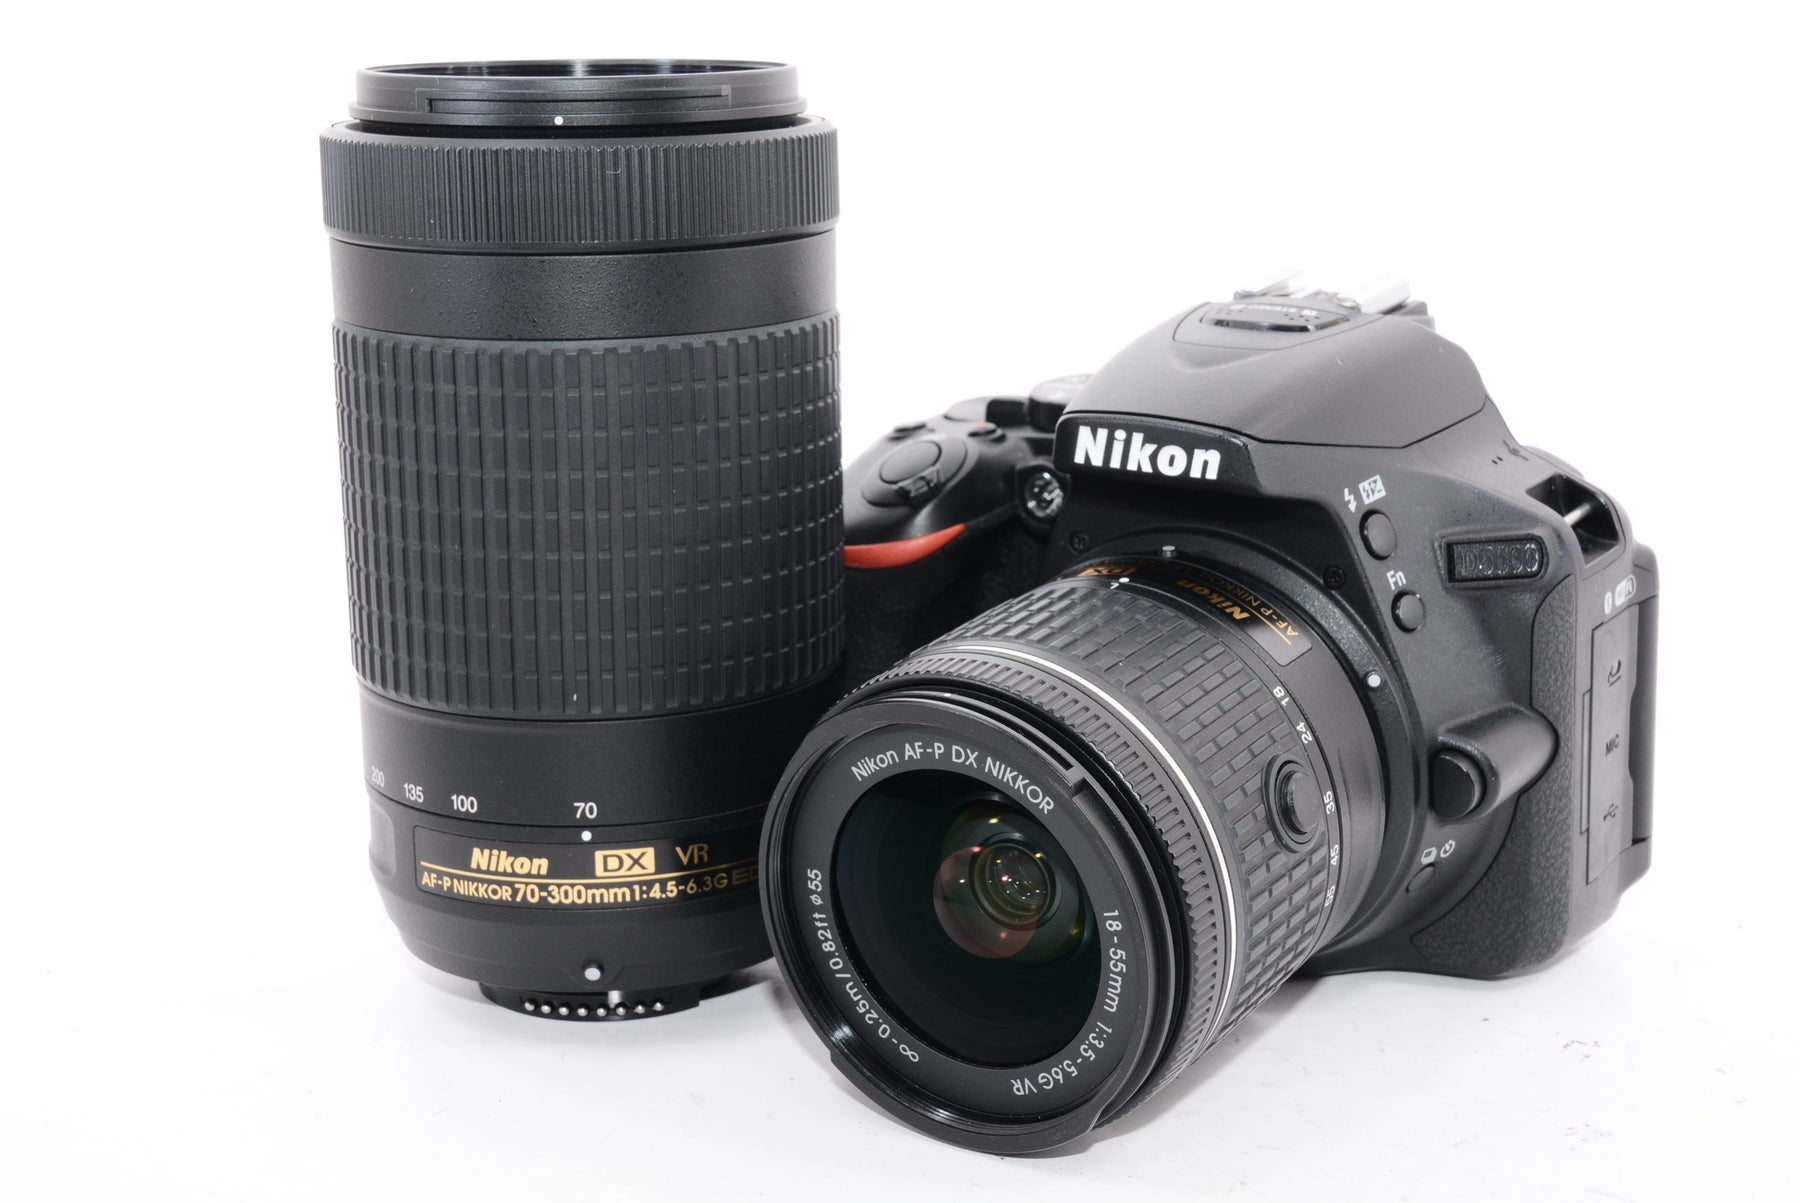 ニコンNikon D5600 ダブルズームキットデジタル一眼レフカメラ